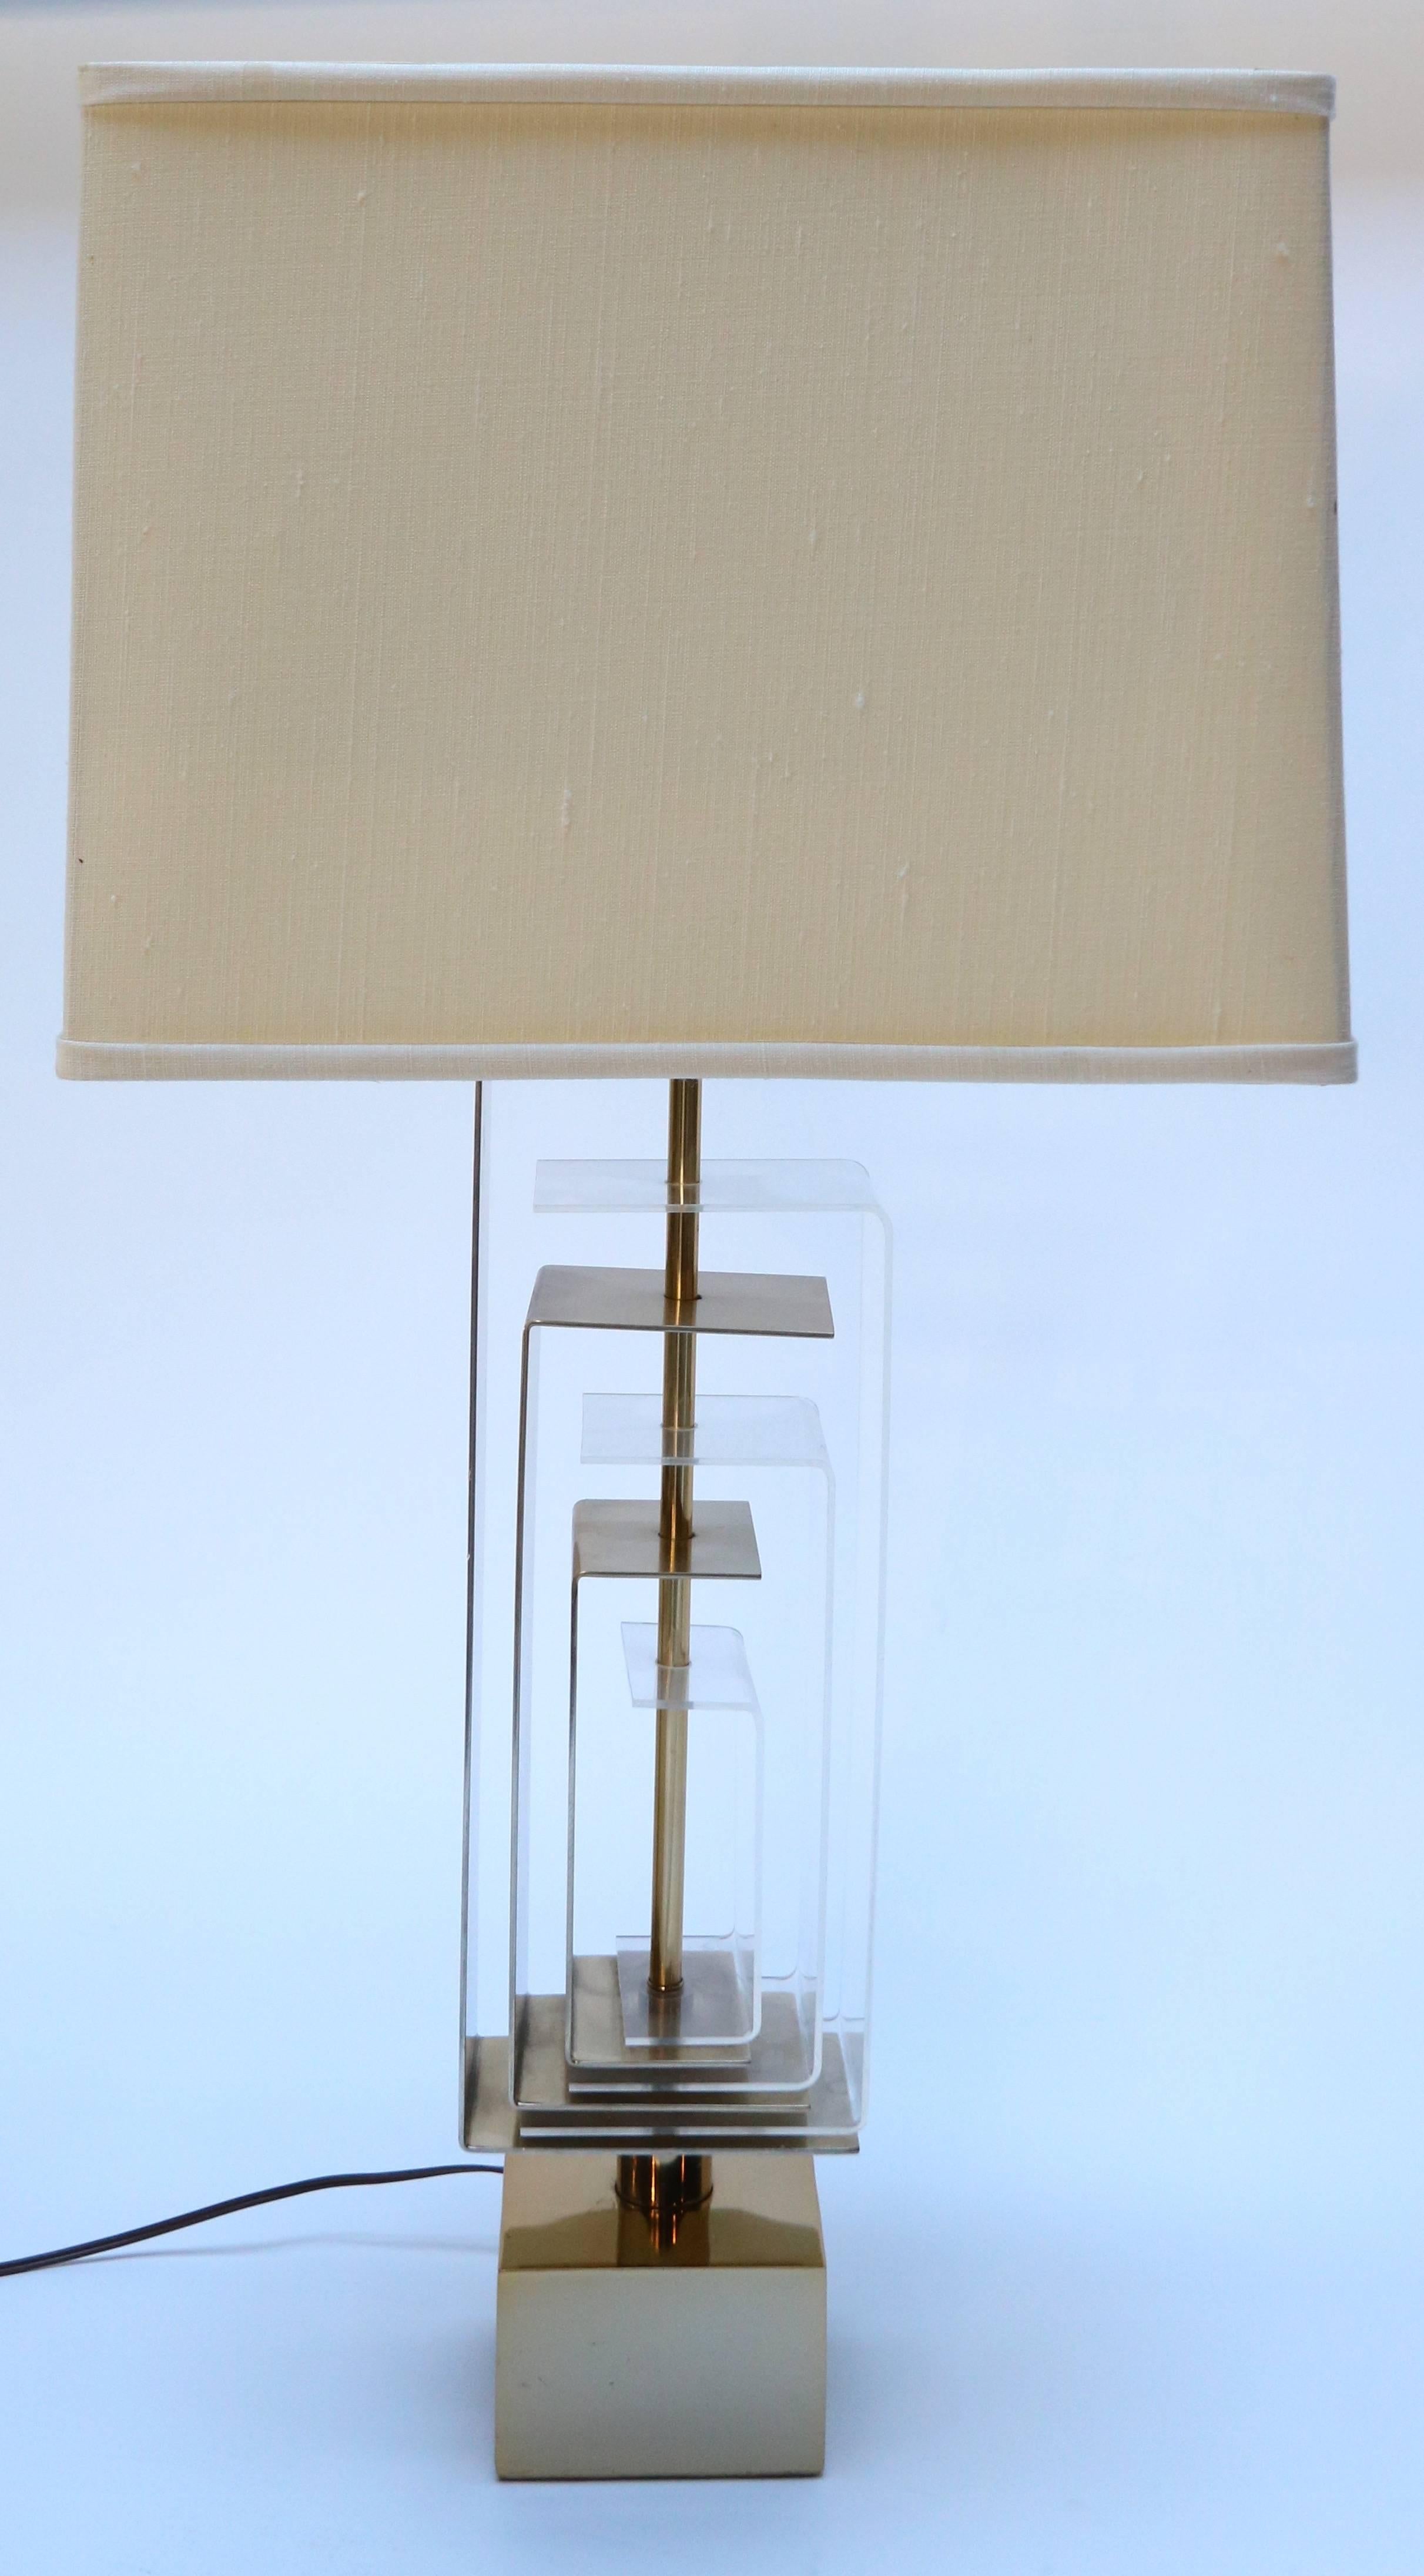 Ein Paar Tischlampen aus Messing und Acryl von Laurel Lamp Co.

Maßnahme: Basis 5